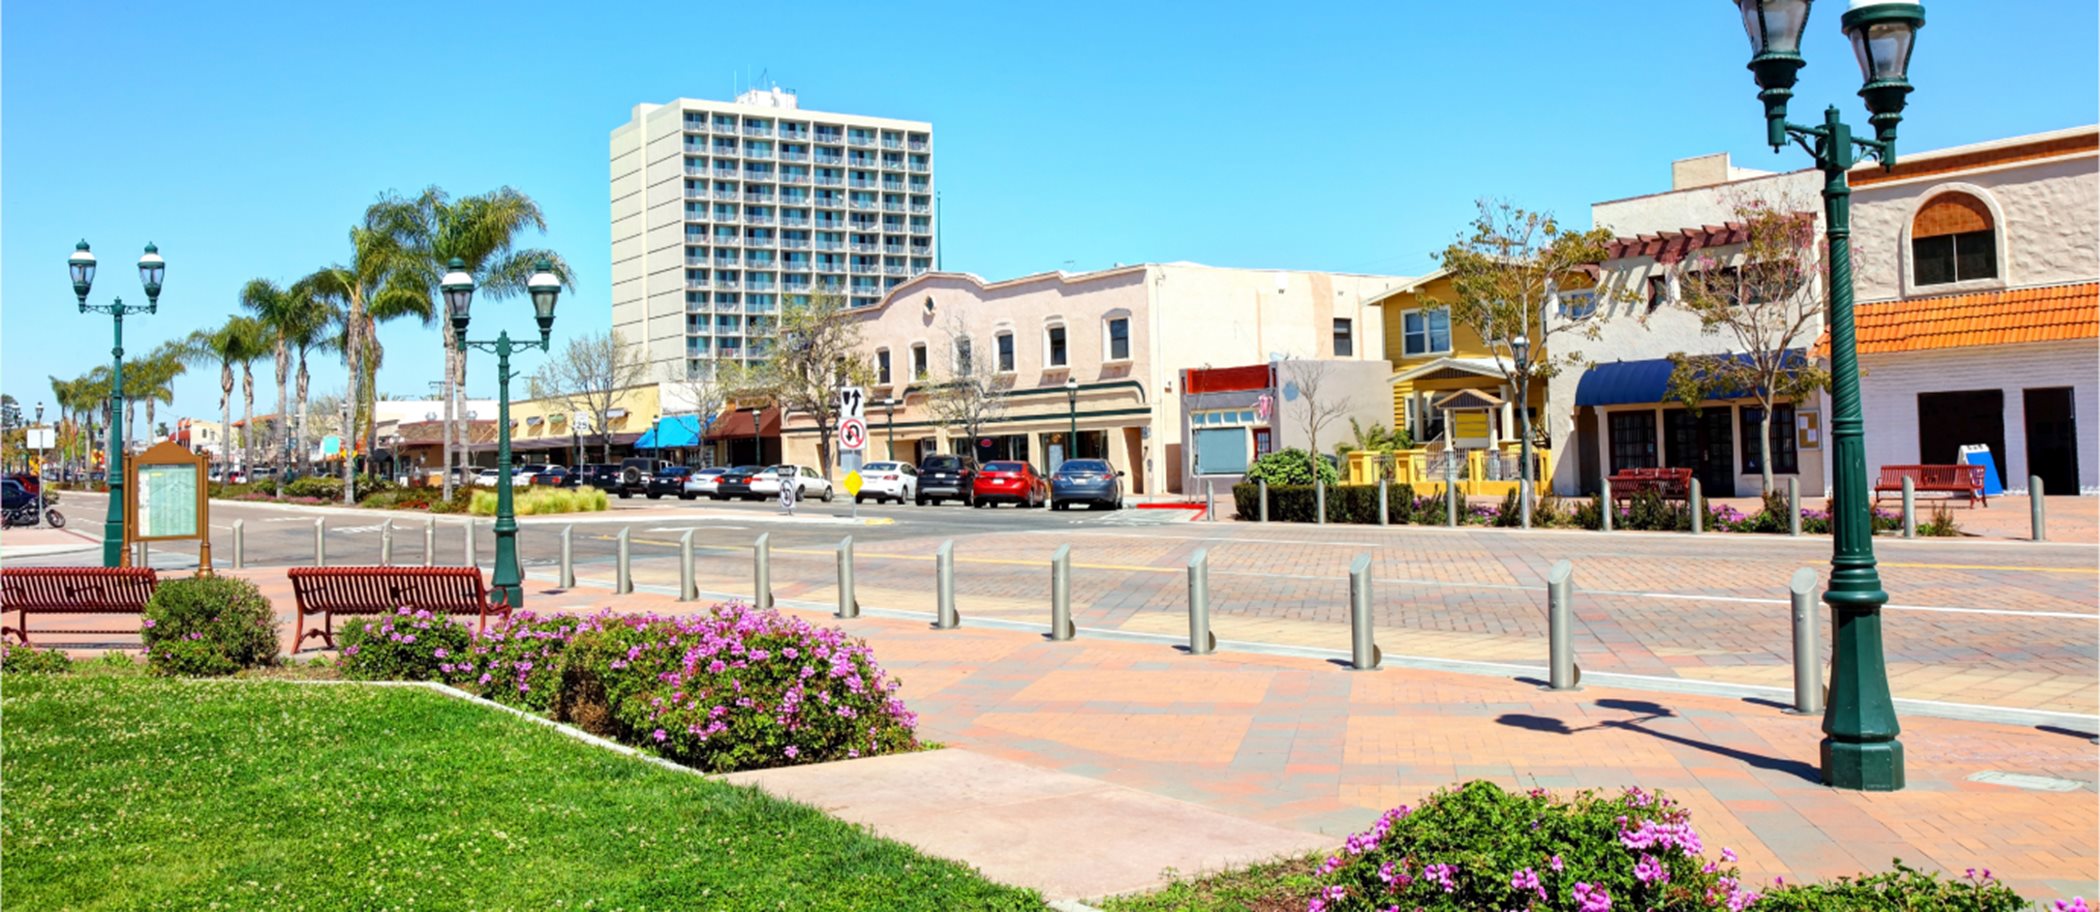 Downtown Chula Vista Street